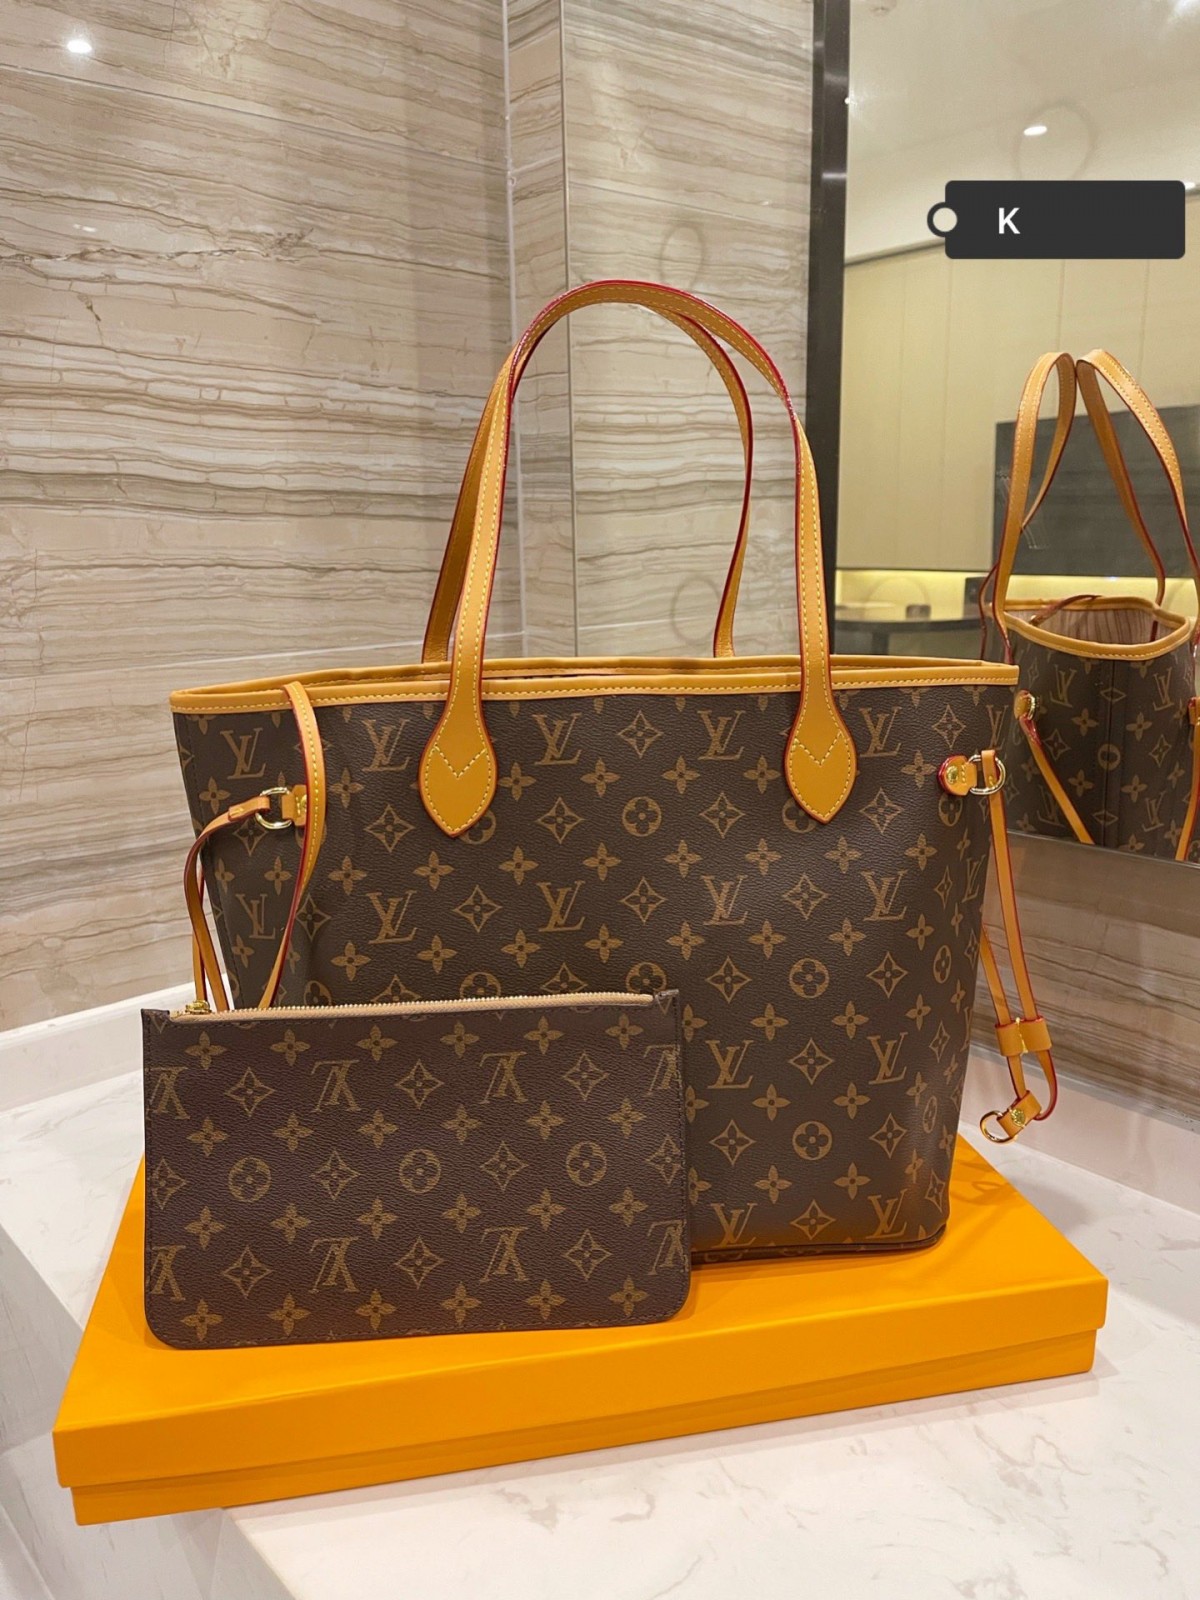 Là một trong những chiếc túi nhái kinh điển của Louis Vuitton Never full, giá chỉ $ 199? (Đặc biệt năm 2022) -Túi Louis Vuitton giả chất lượng tốt nhất Cửa hàng trực tuyến, túi thiết kế bản sao ru